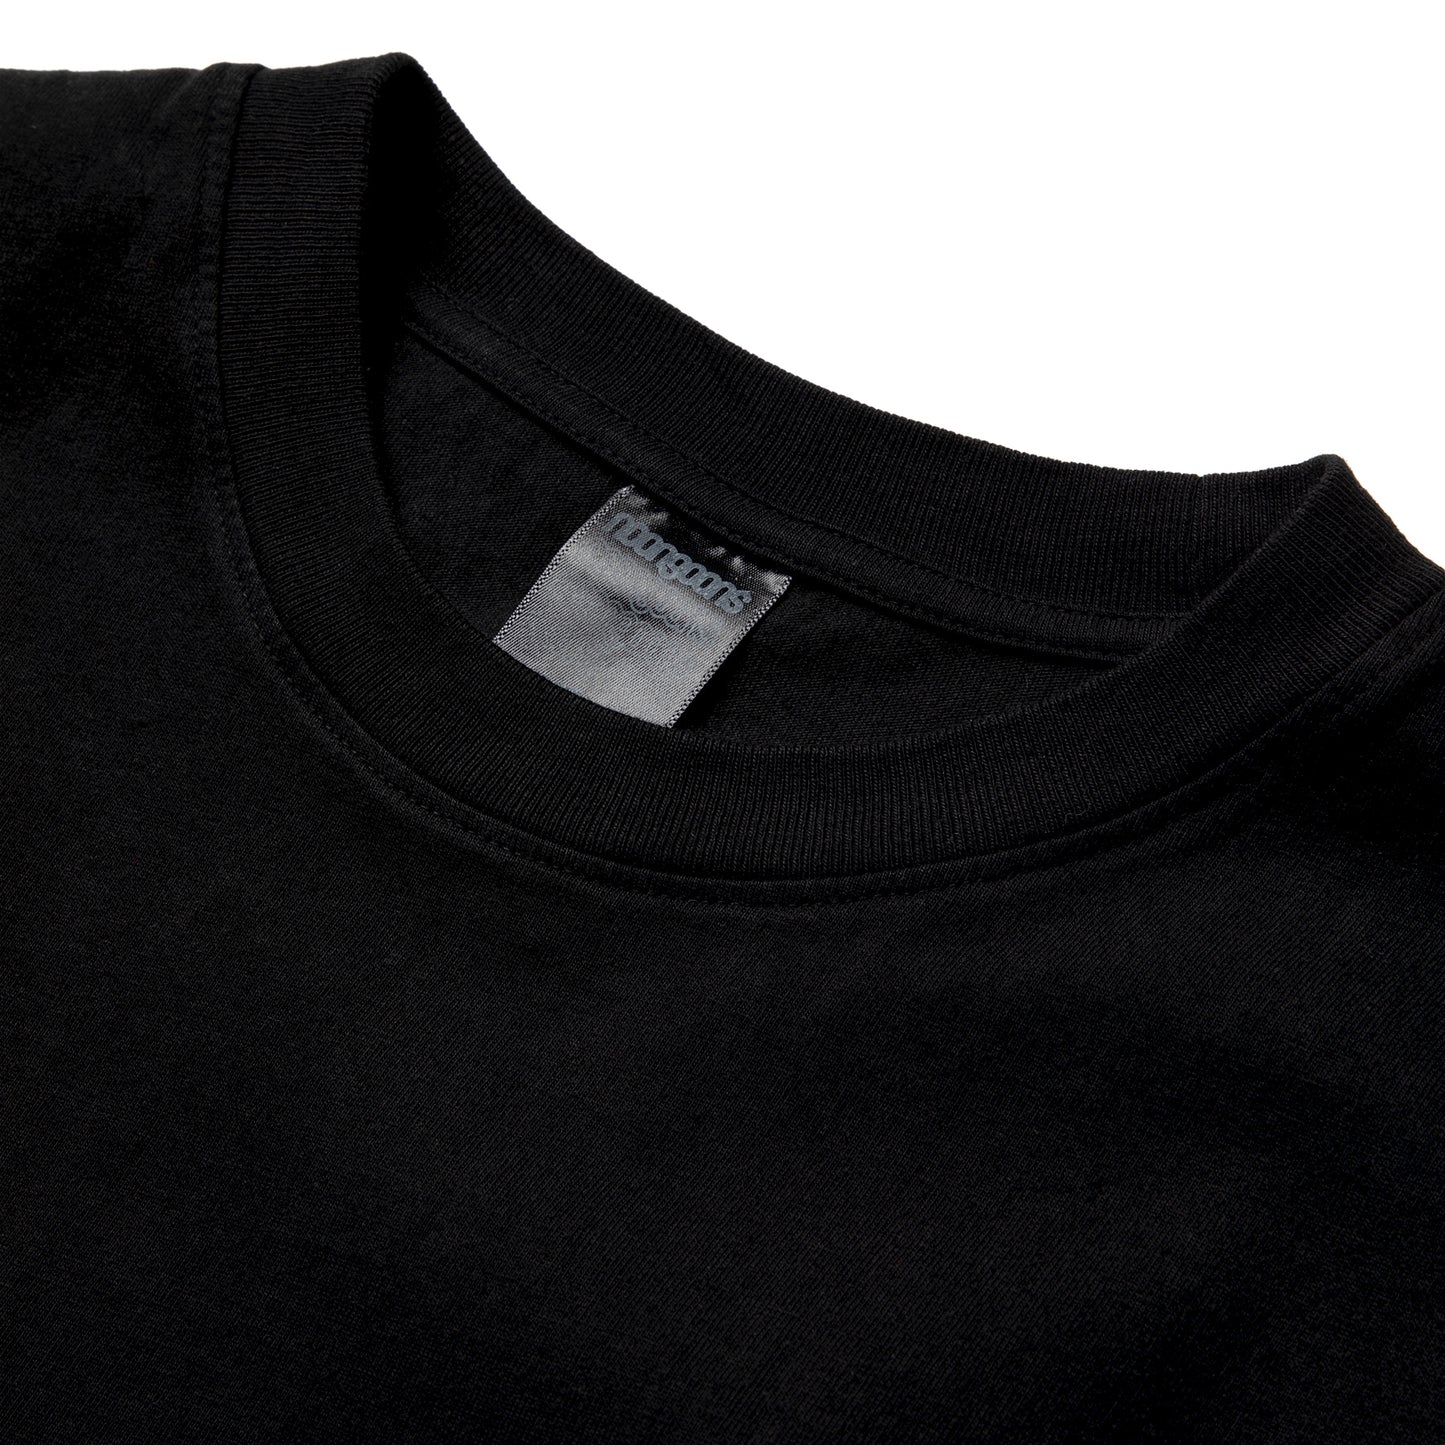 Noon Goons Sketchy T-Shirt (Black)